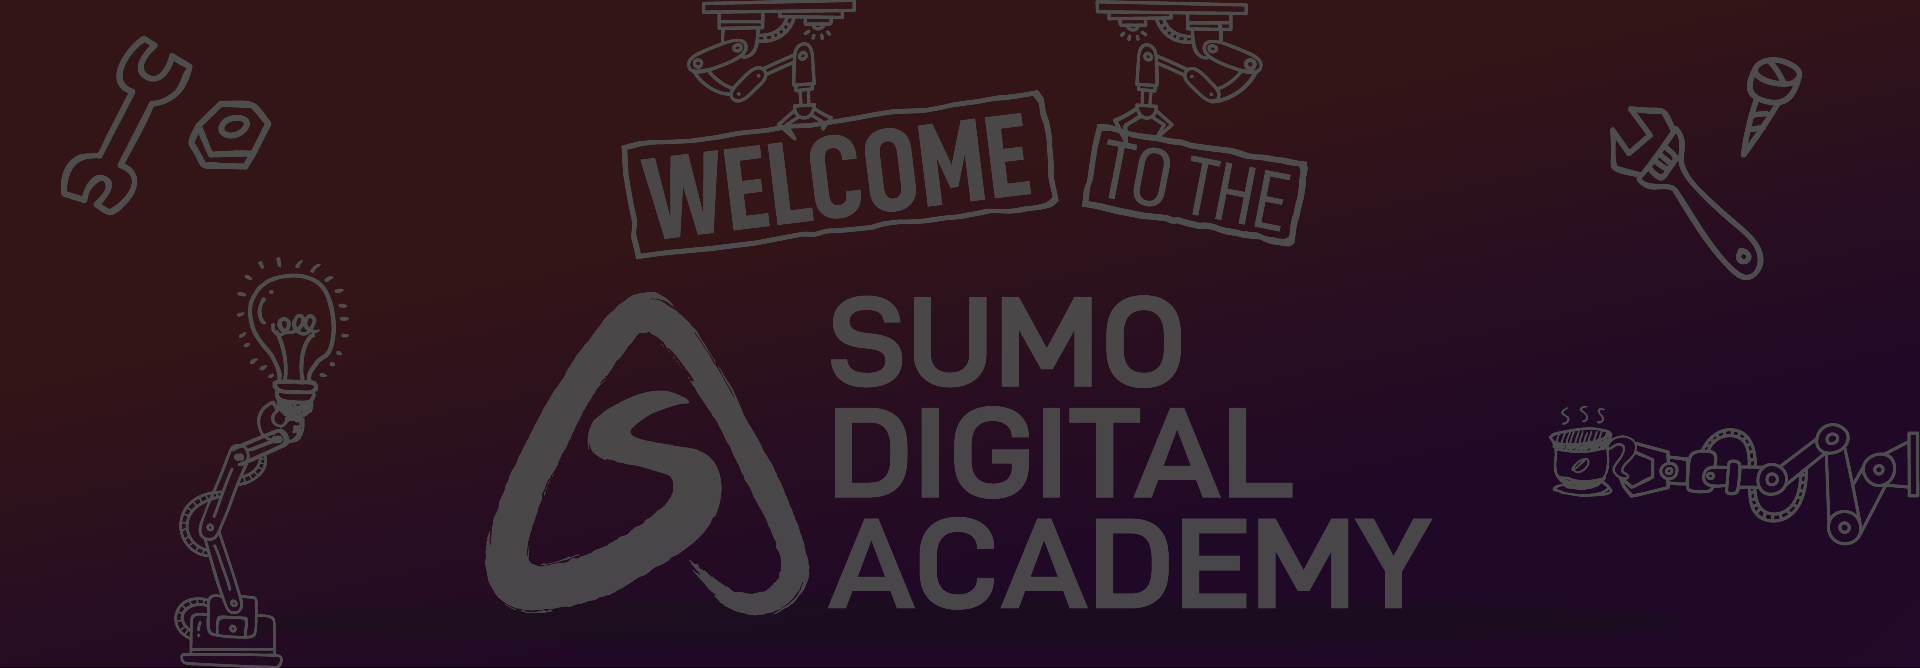 Meet the Sumo Academy Cohort